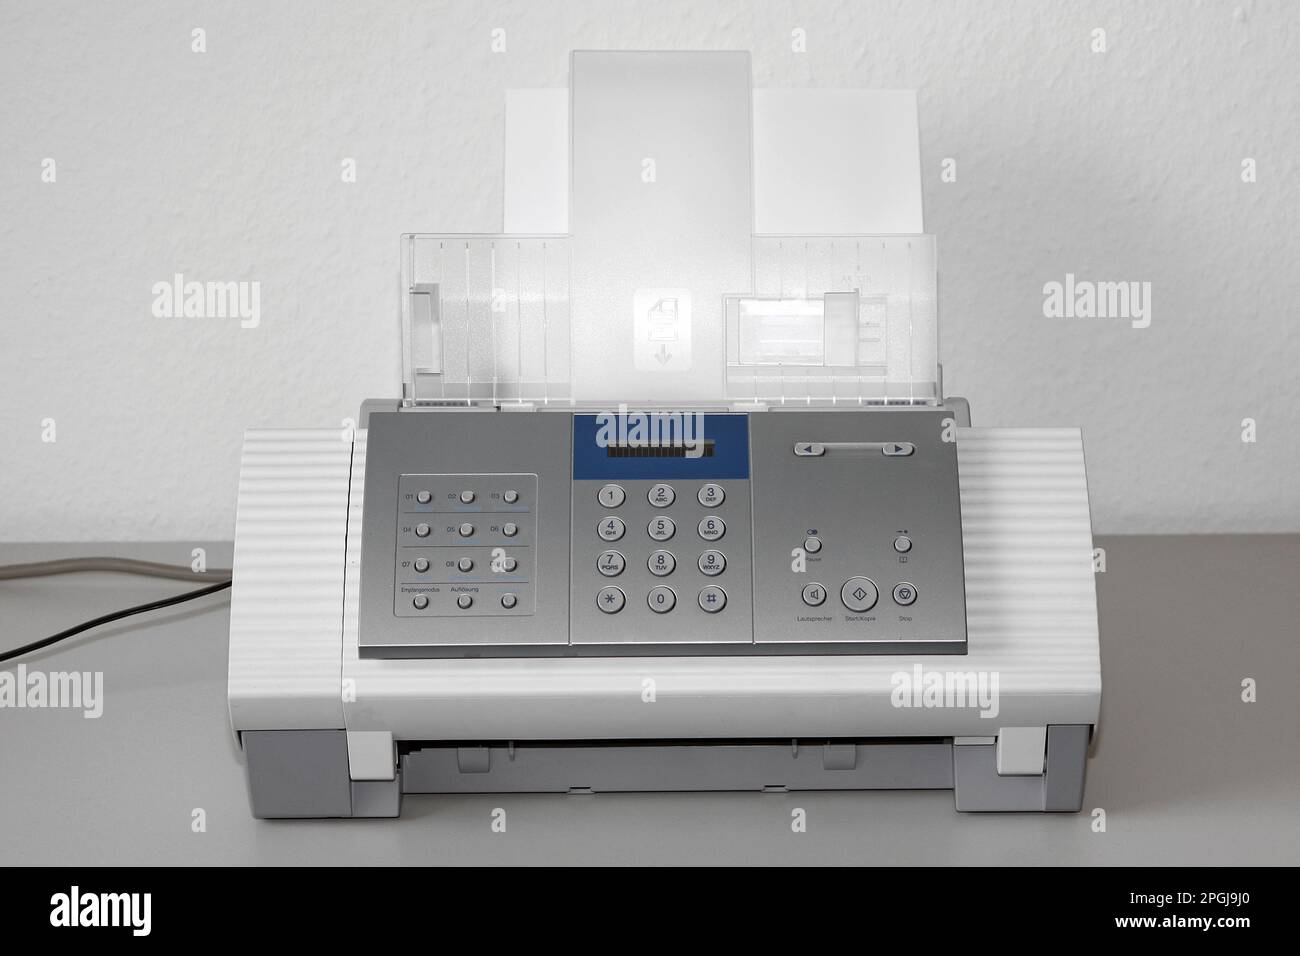 Les fax Banque de photographies et d'images à haute résolution - Alamy